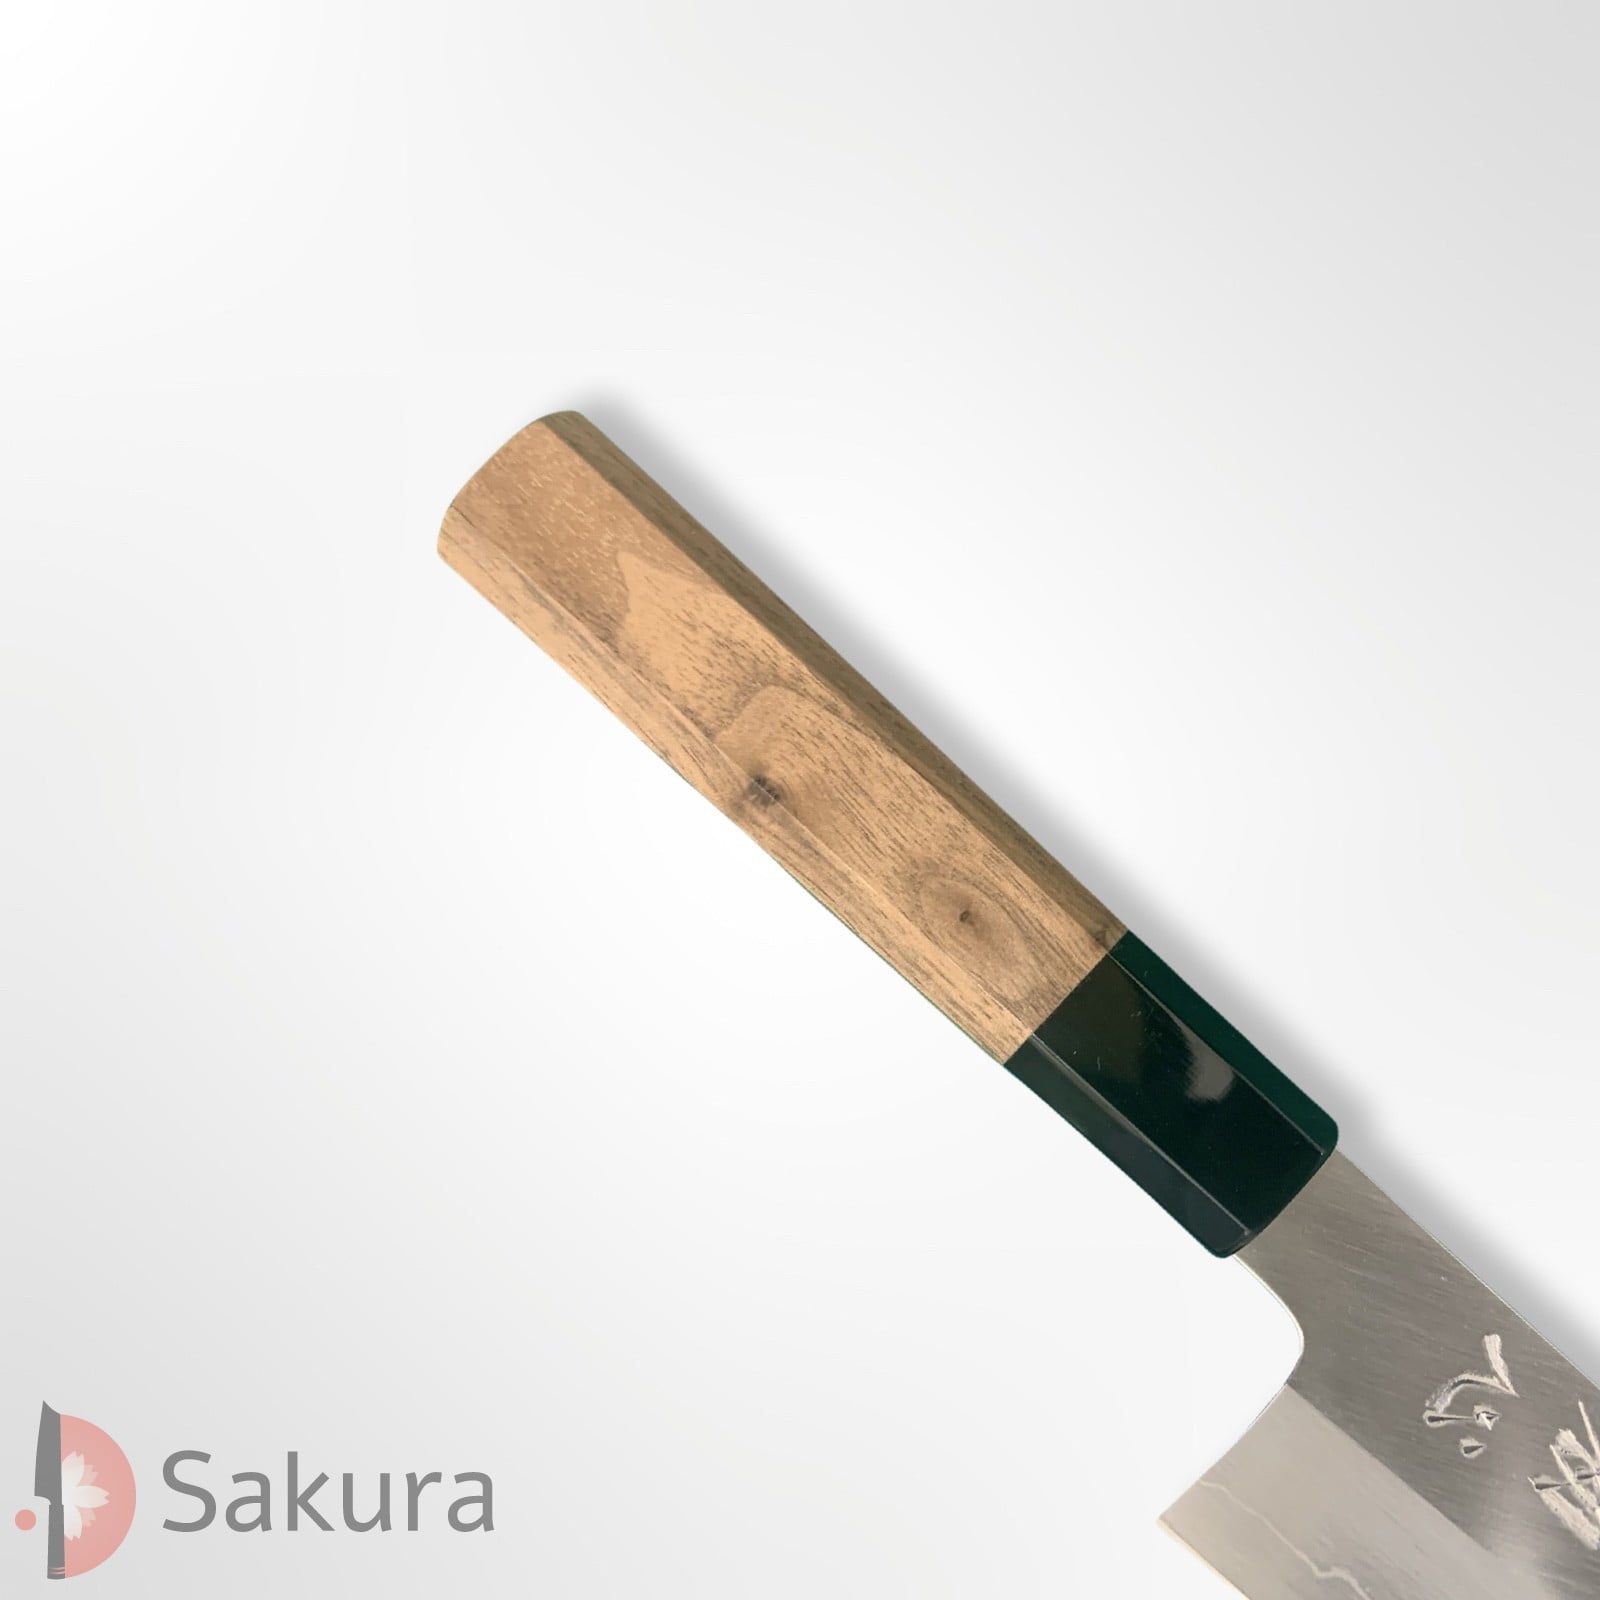 סכין רב-תכליתית בּוּנְקָה 170מ״מ מחושלת בעבודת יד 3 שכבות: פלדת פחמן יפנית מתקדמת מסוג Ginsan Silver#3 עטופה פלדת אל-חלד גימור מט מלוטש נאקאגאווה המונו יפן – SKNAKAS3BUNK16544